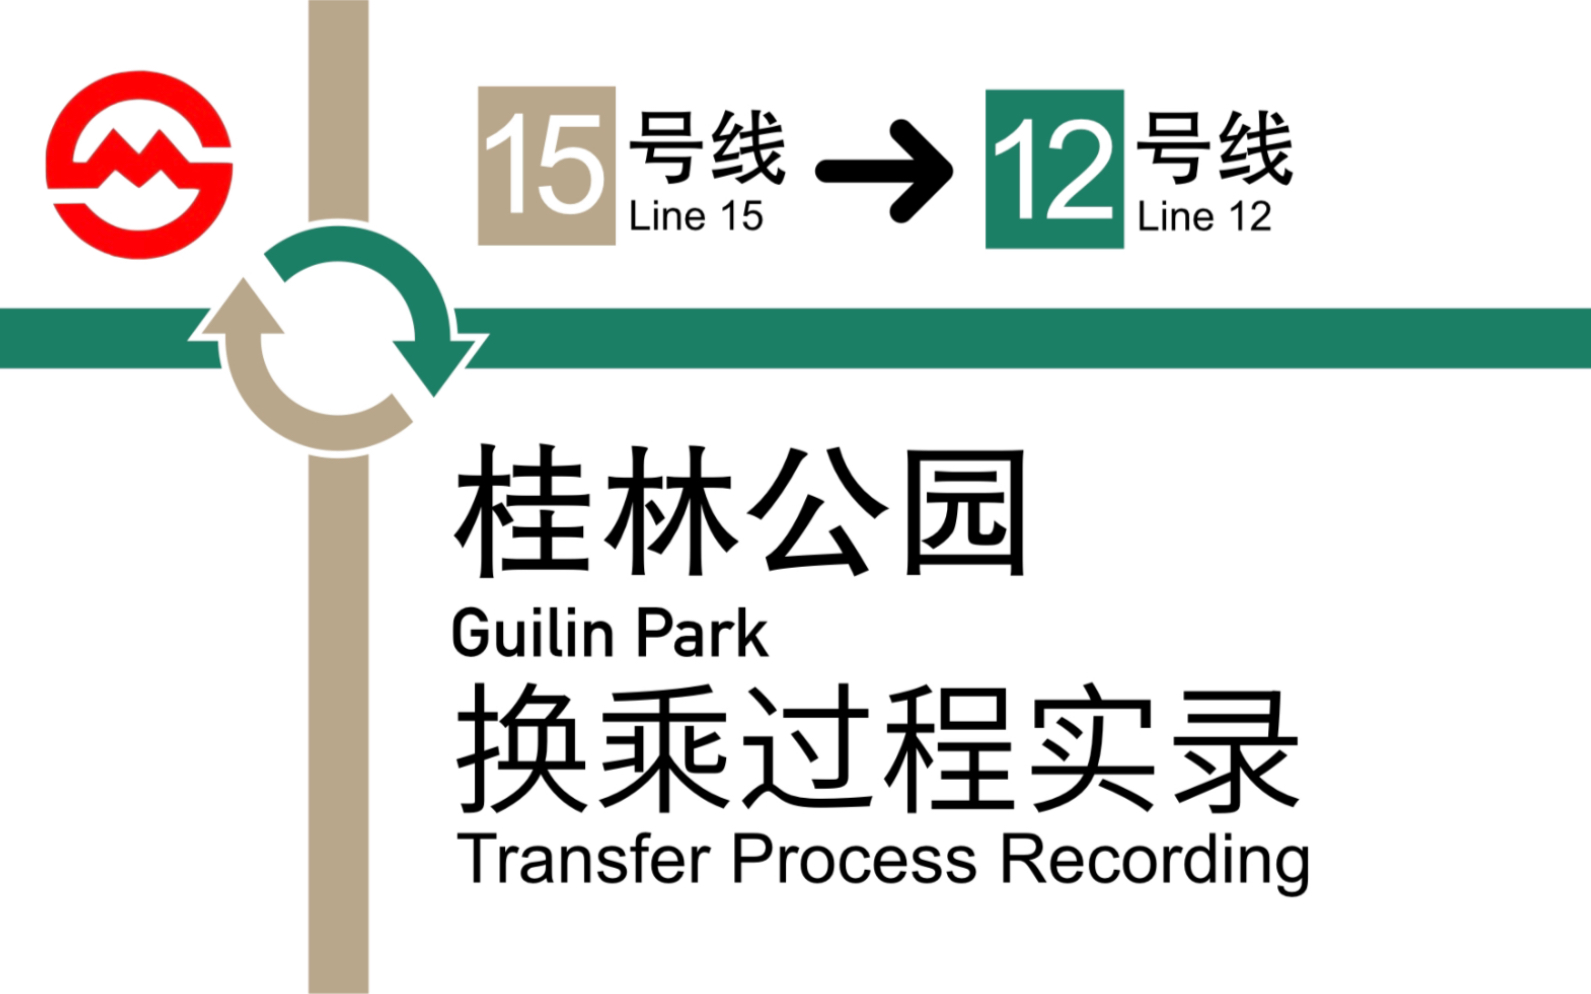 15号线桂林公园换乘图片